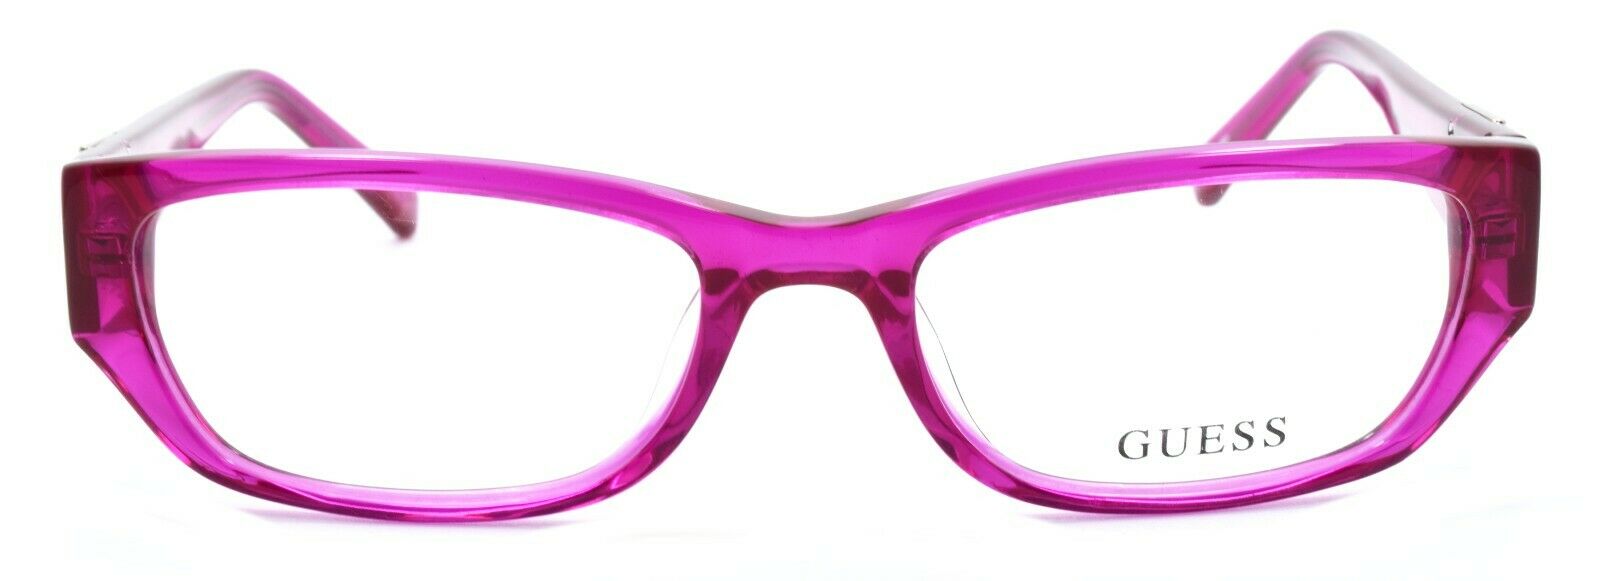 2-GUESS GU2387 PNK Women's Eyeglasses Frames 51-17-140 Pink + CASE-715583776531-IKSpecs